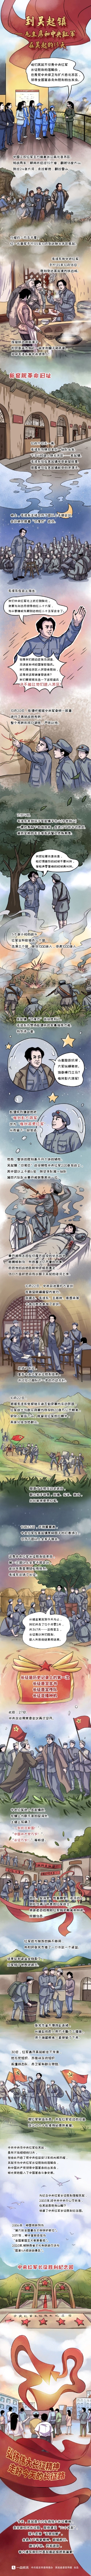 条漫《到吴起镇》| 毛主席和中央红军在吴起的13天